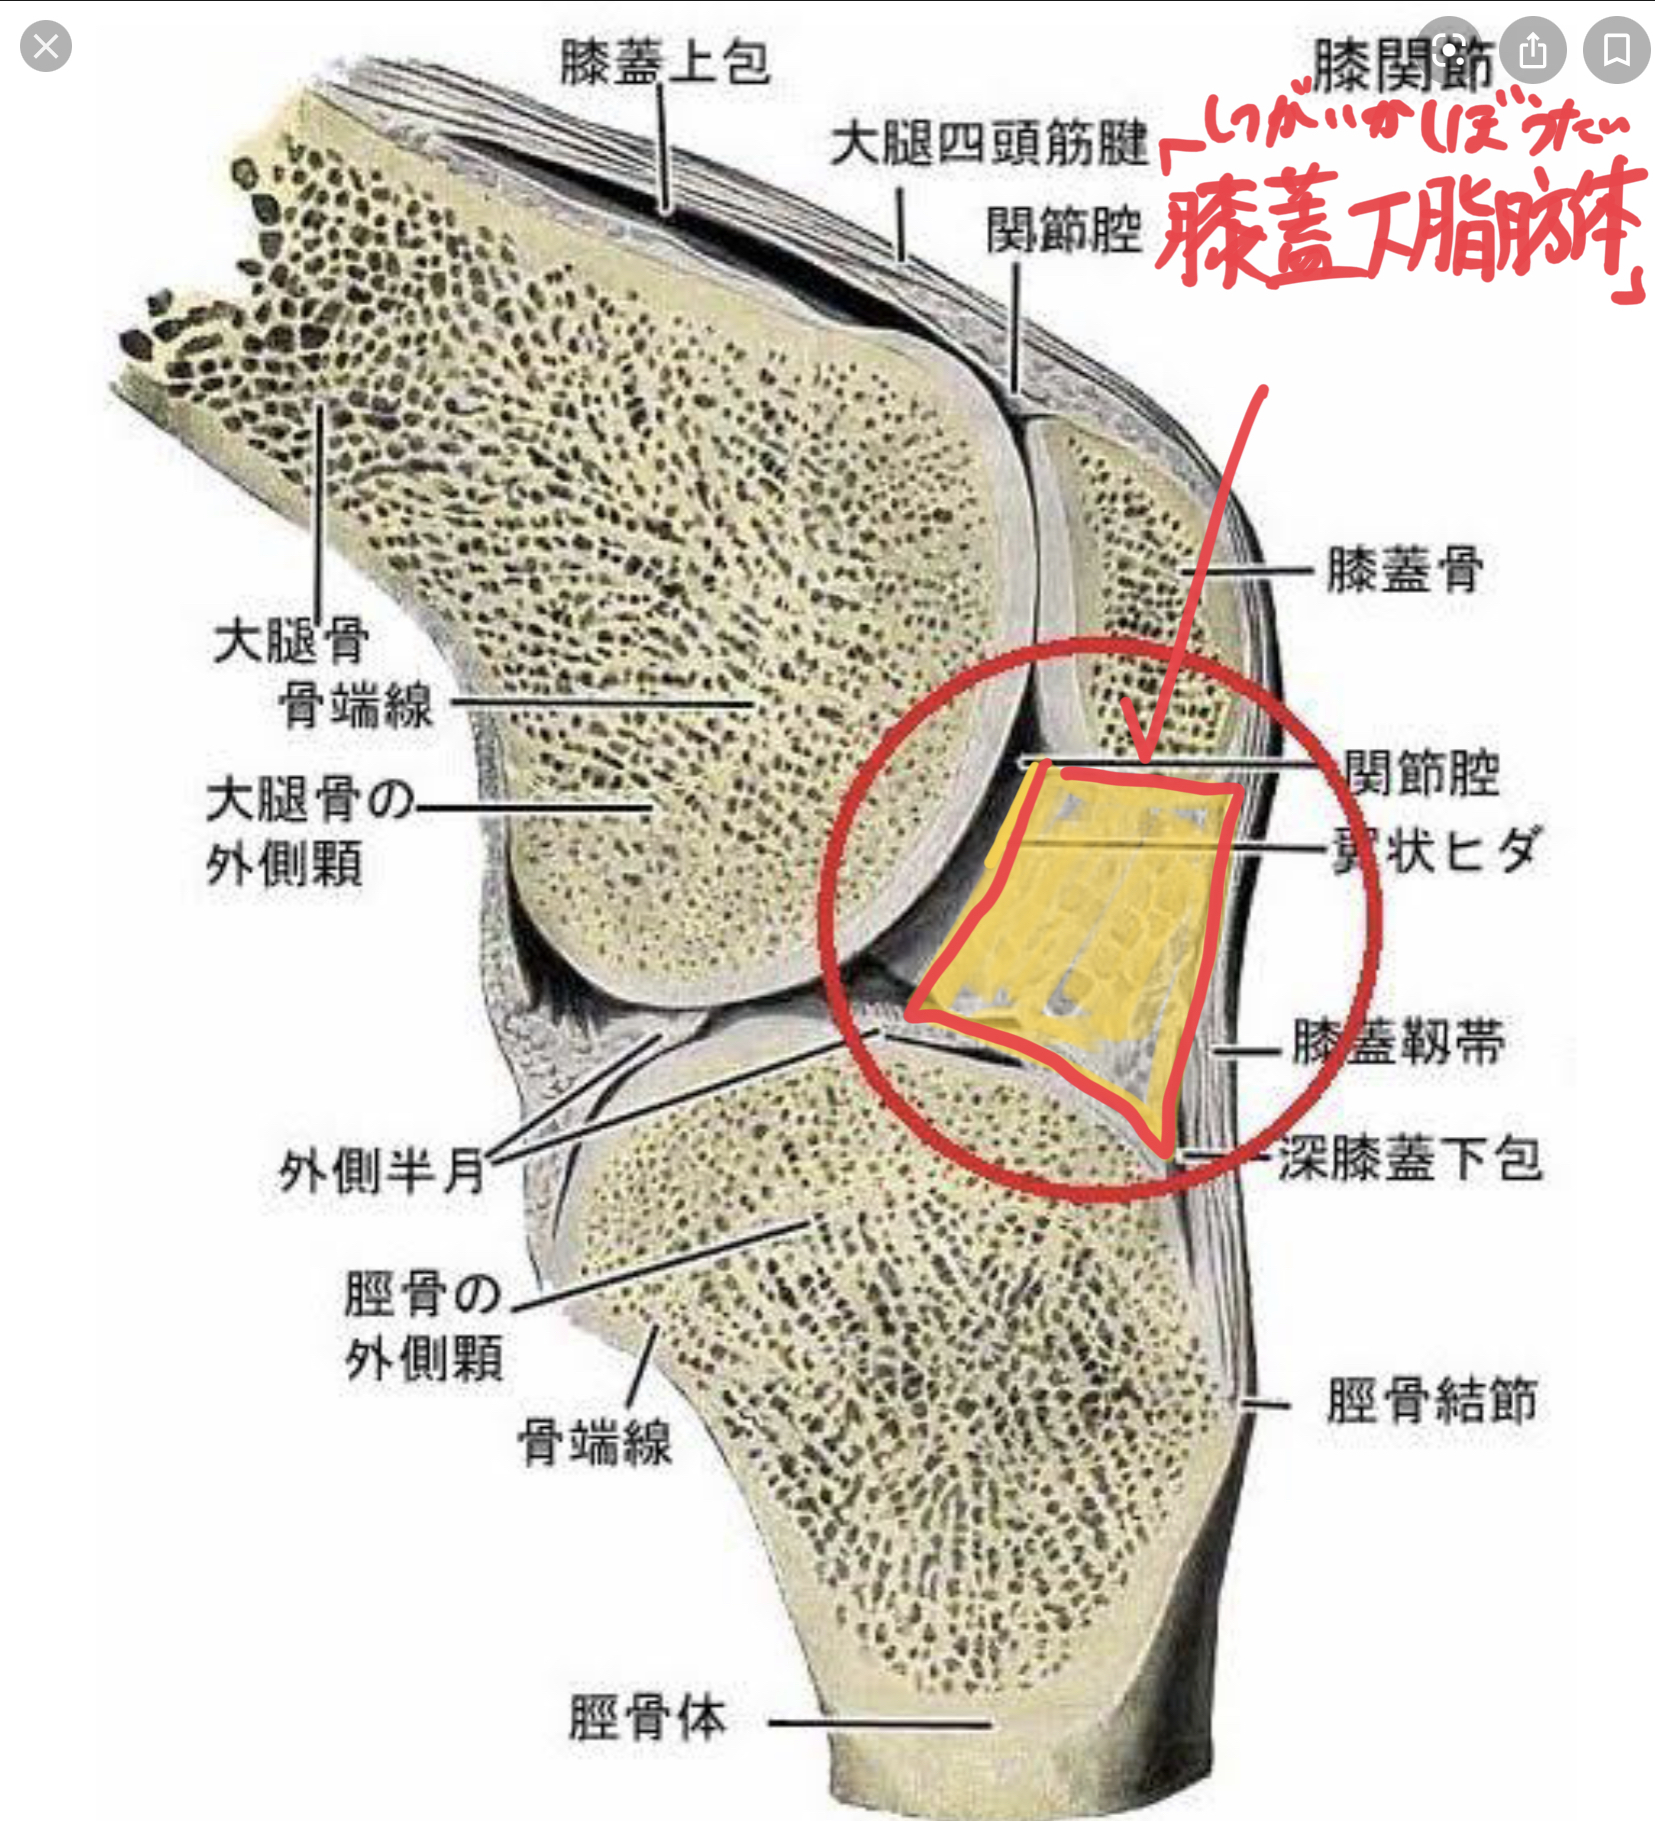 膝の痛みを改善する 膝蓋下脂肪体リリース 理学療法士 安部元隆 マイベストプロ大分